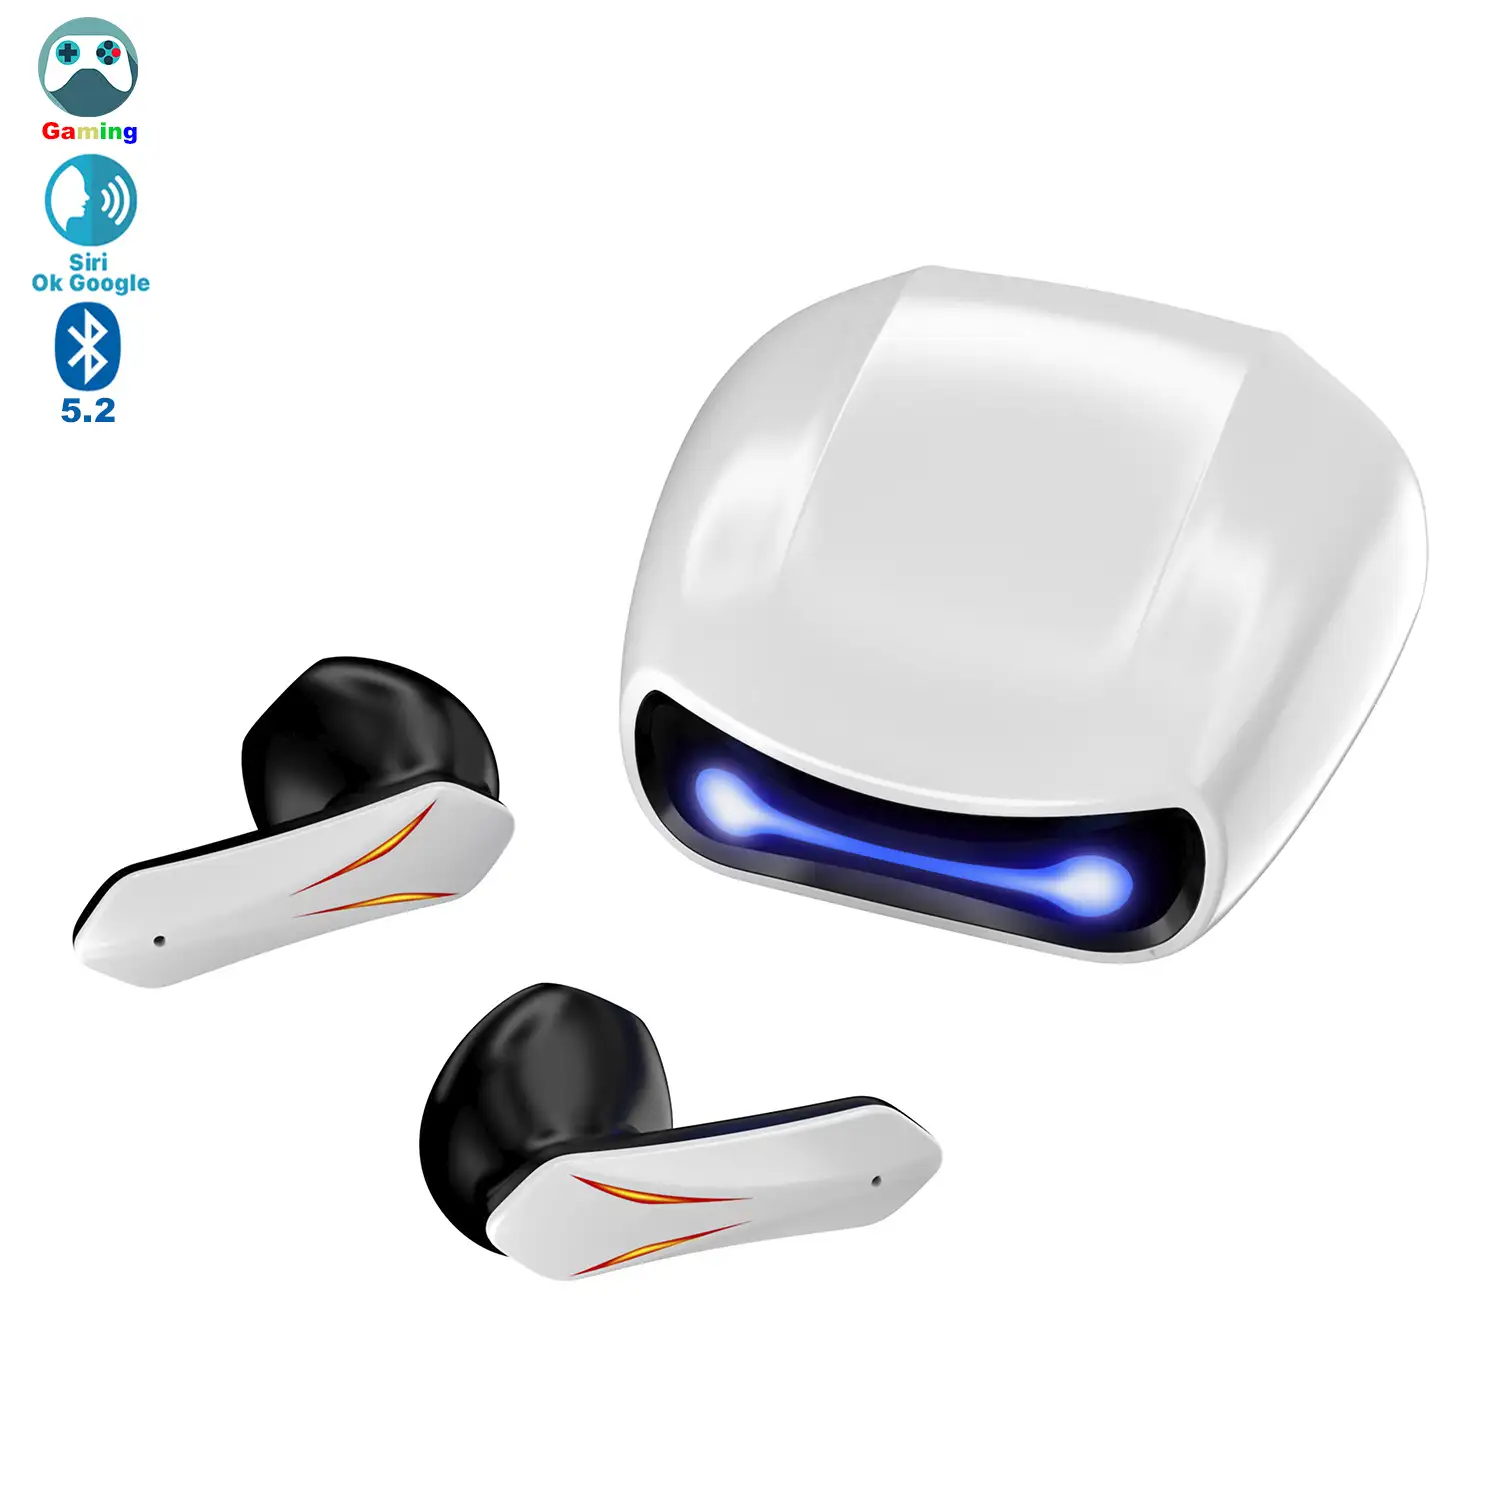 Auriculares R05 TWS, Bluetooth 5.2. Base de carga luces led RGB. Control táctil de reproducción musical y llamadas.